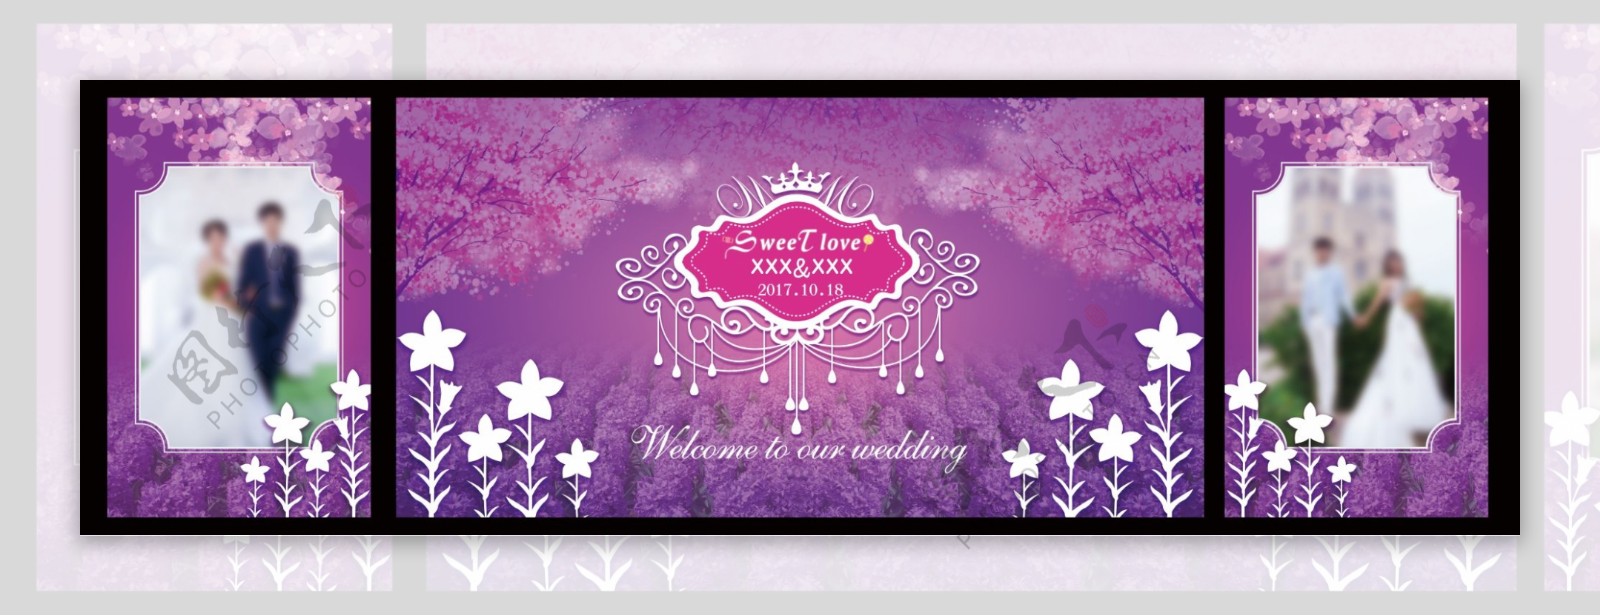 紫色浪漫婚礼展板